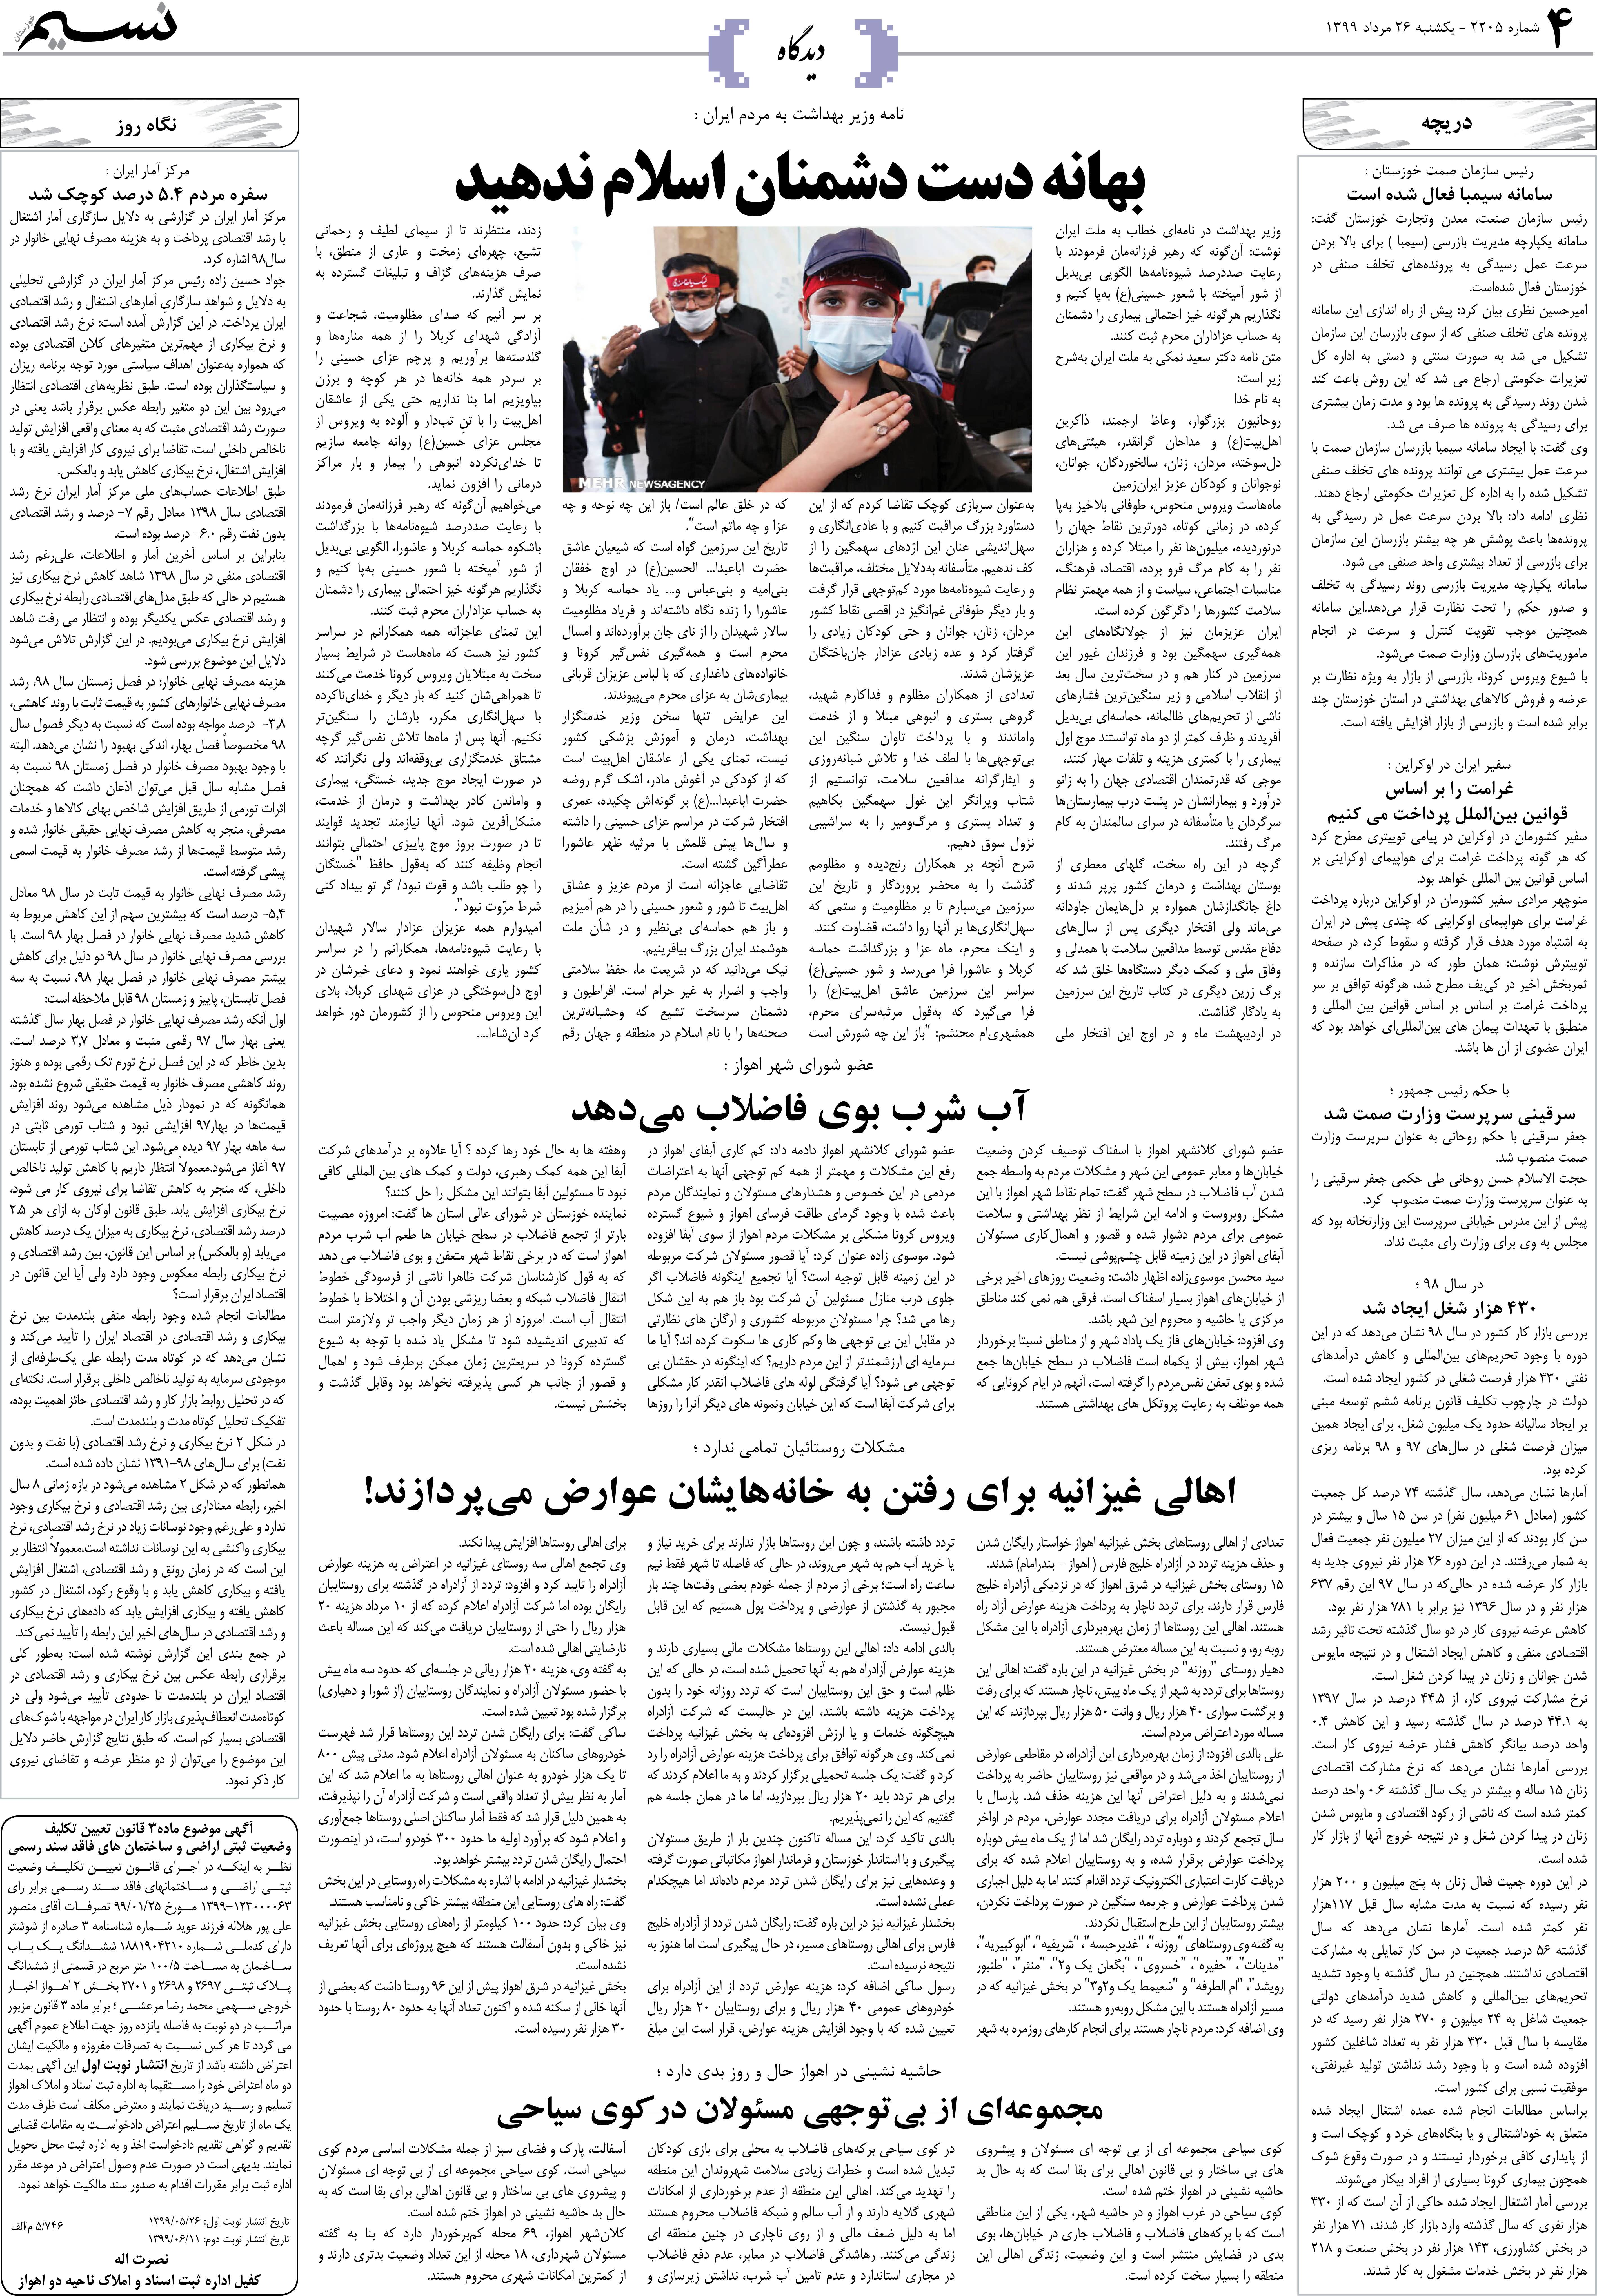 صفحه دیدگاه روزنامه نسیم شماره 2205